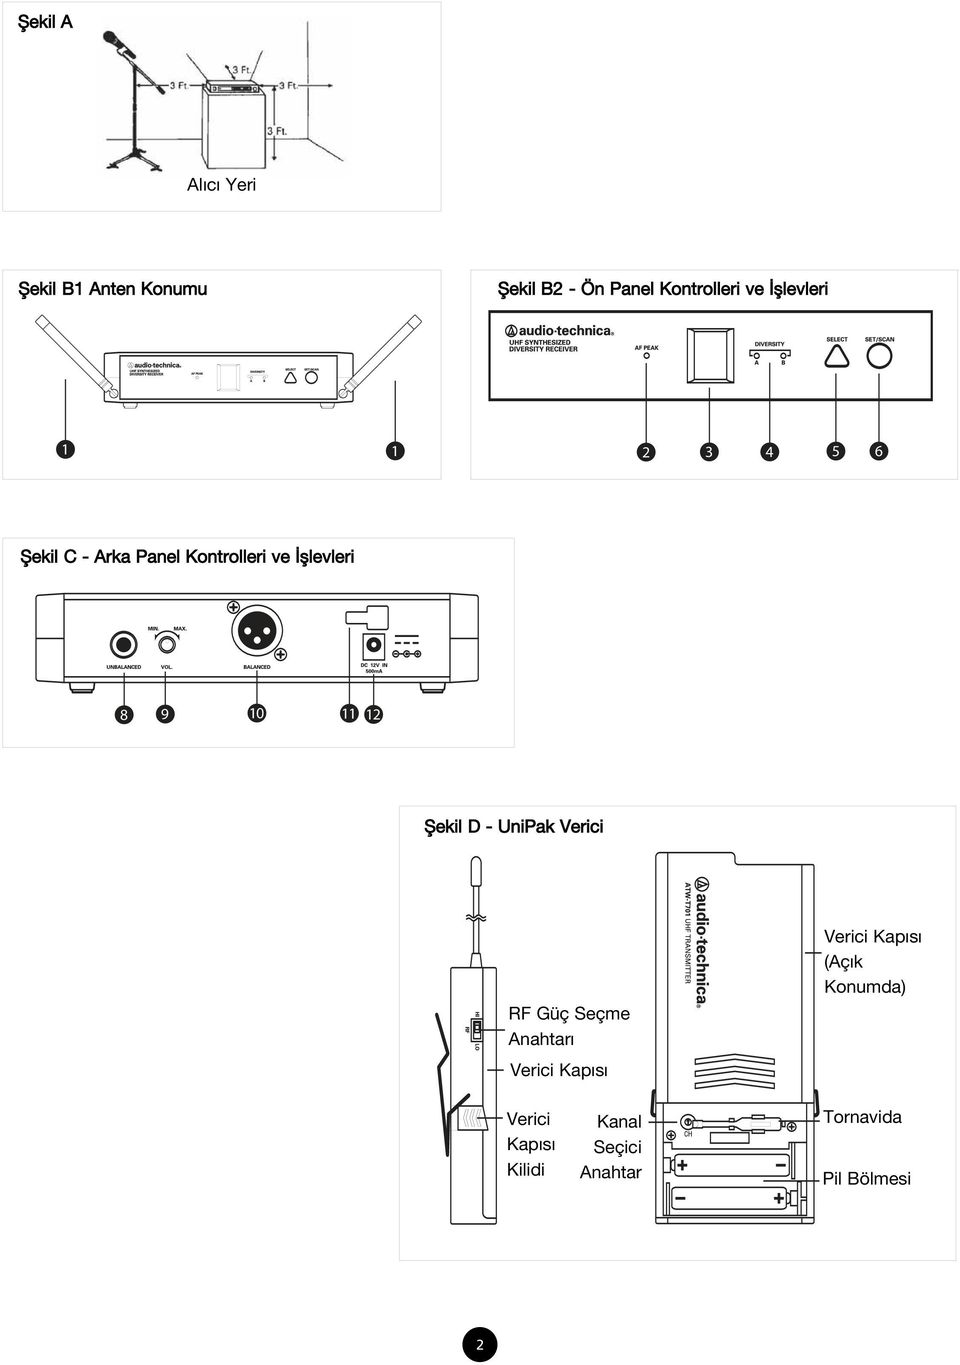 11 12 fiekil D - UniPak Verici RF Güç Seçme Anahtar Verici Kap s Verici Kap s